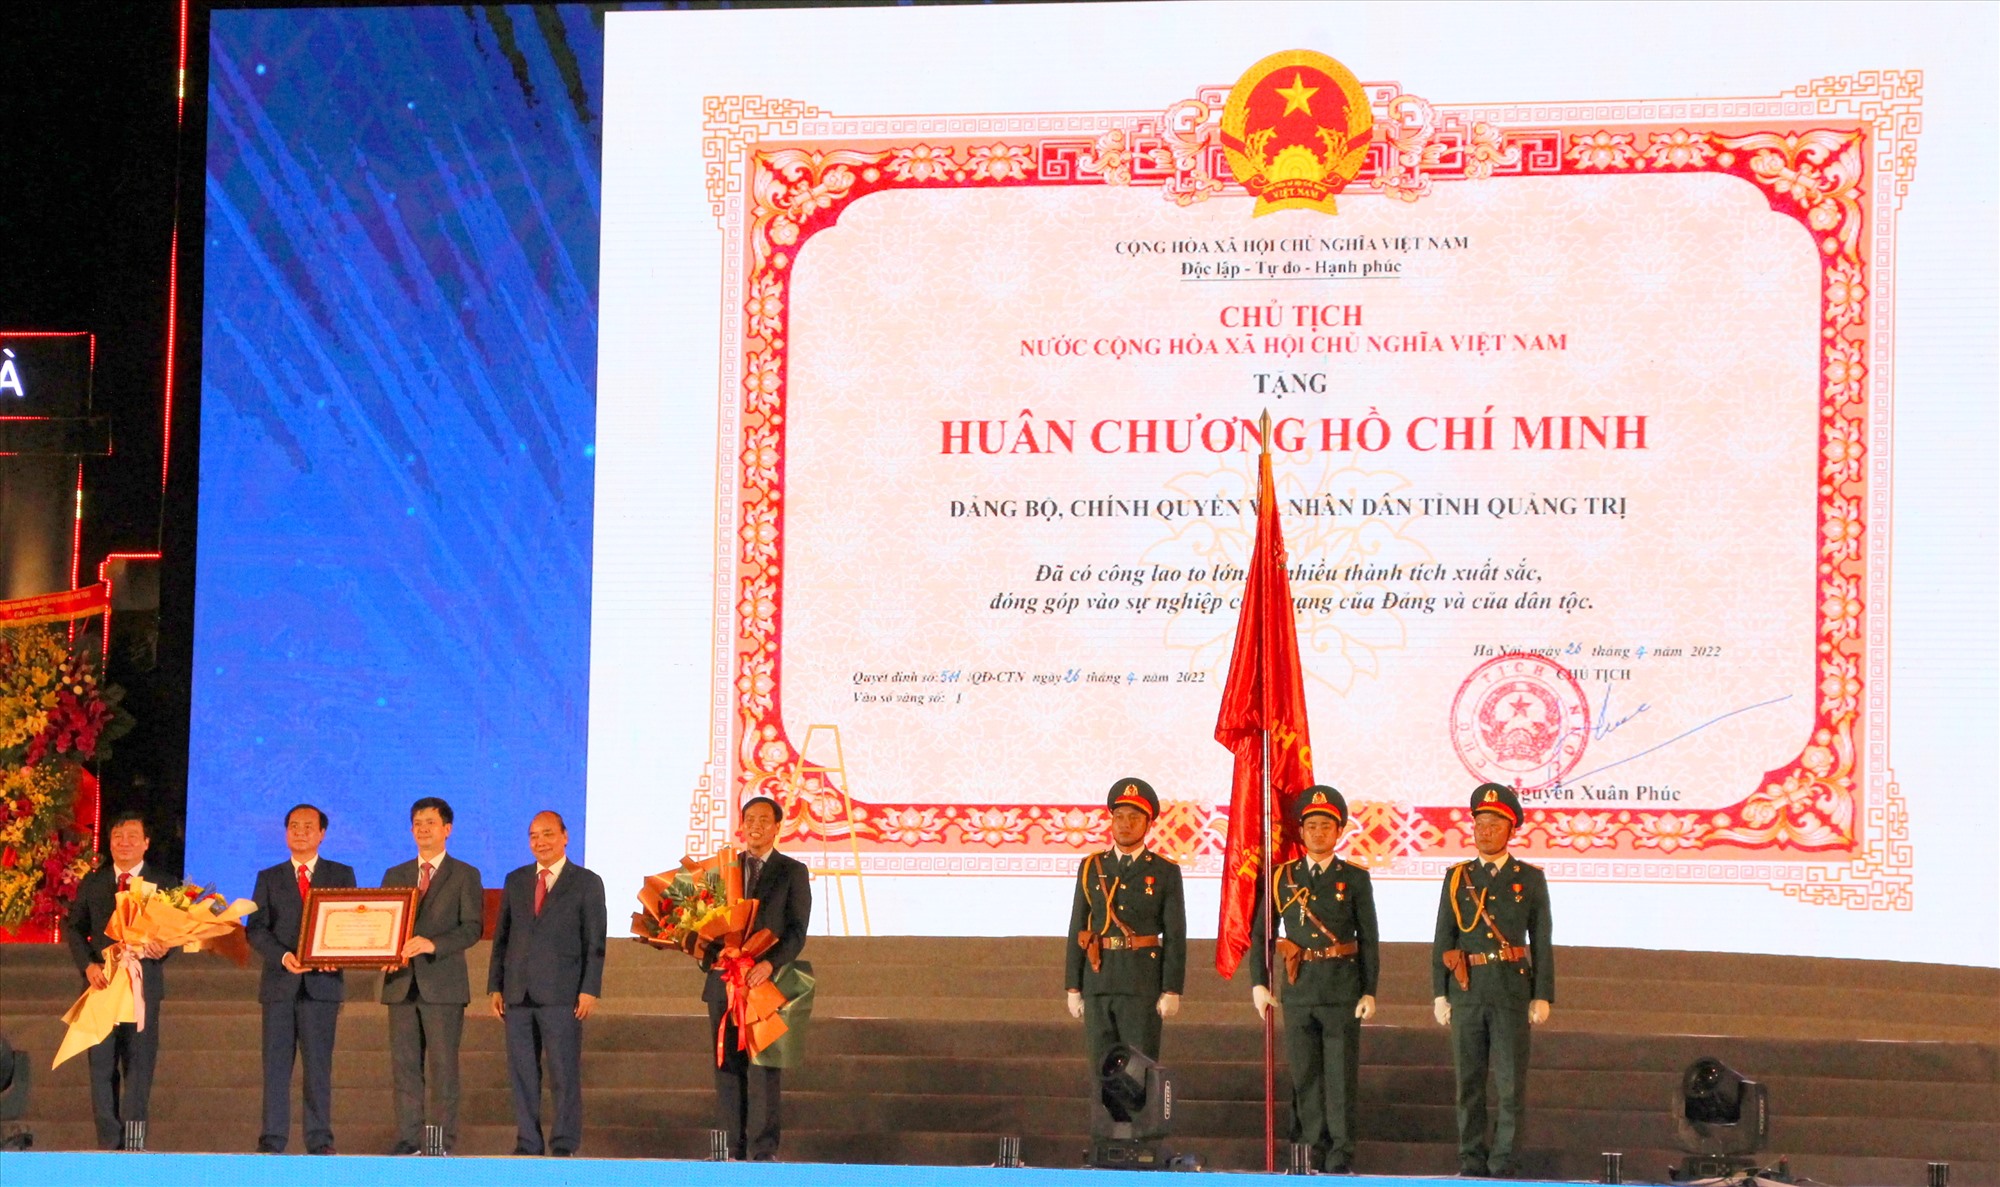 Chủ tịch nước Nguyễn Xuân Phúc trao tặng Huân chương Hồ Chí Minh cho Đảng bộ, chính quyền và Nhân dân tỉnh Quảng Trị - Ảnh: THÀNH DŨNG